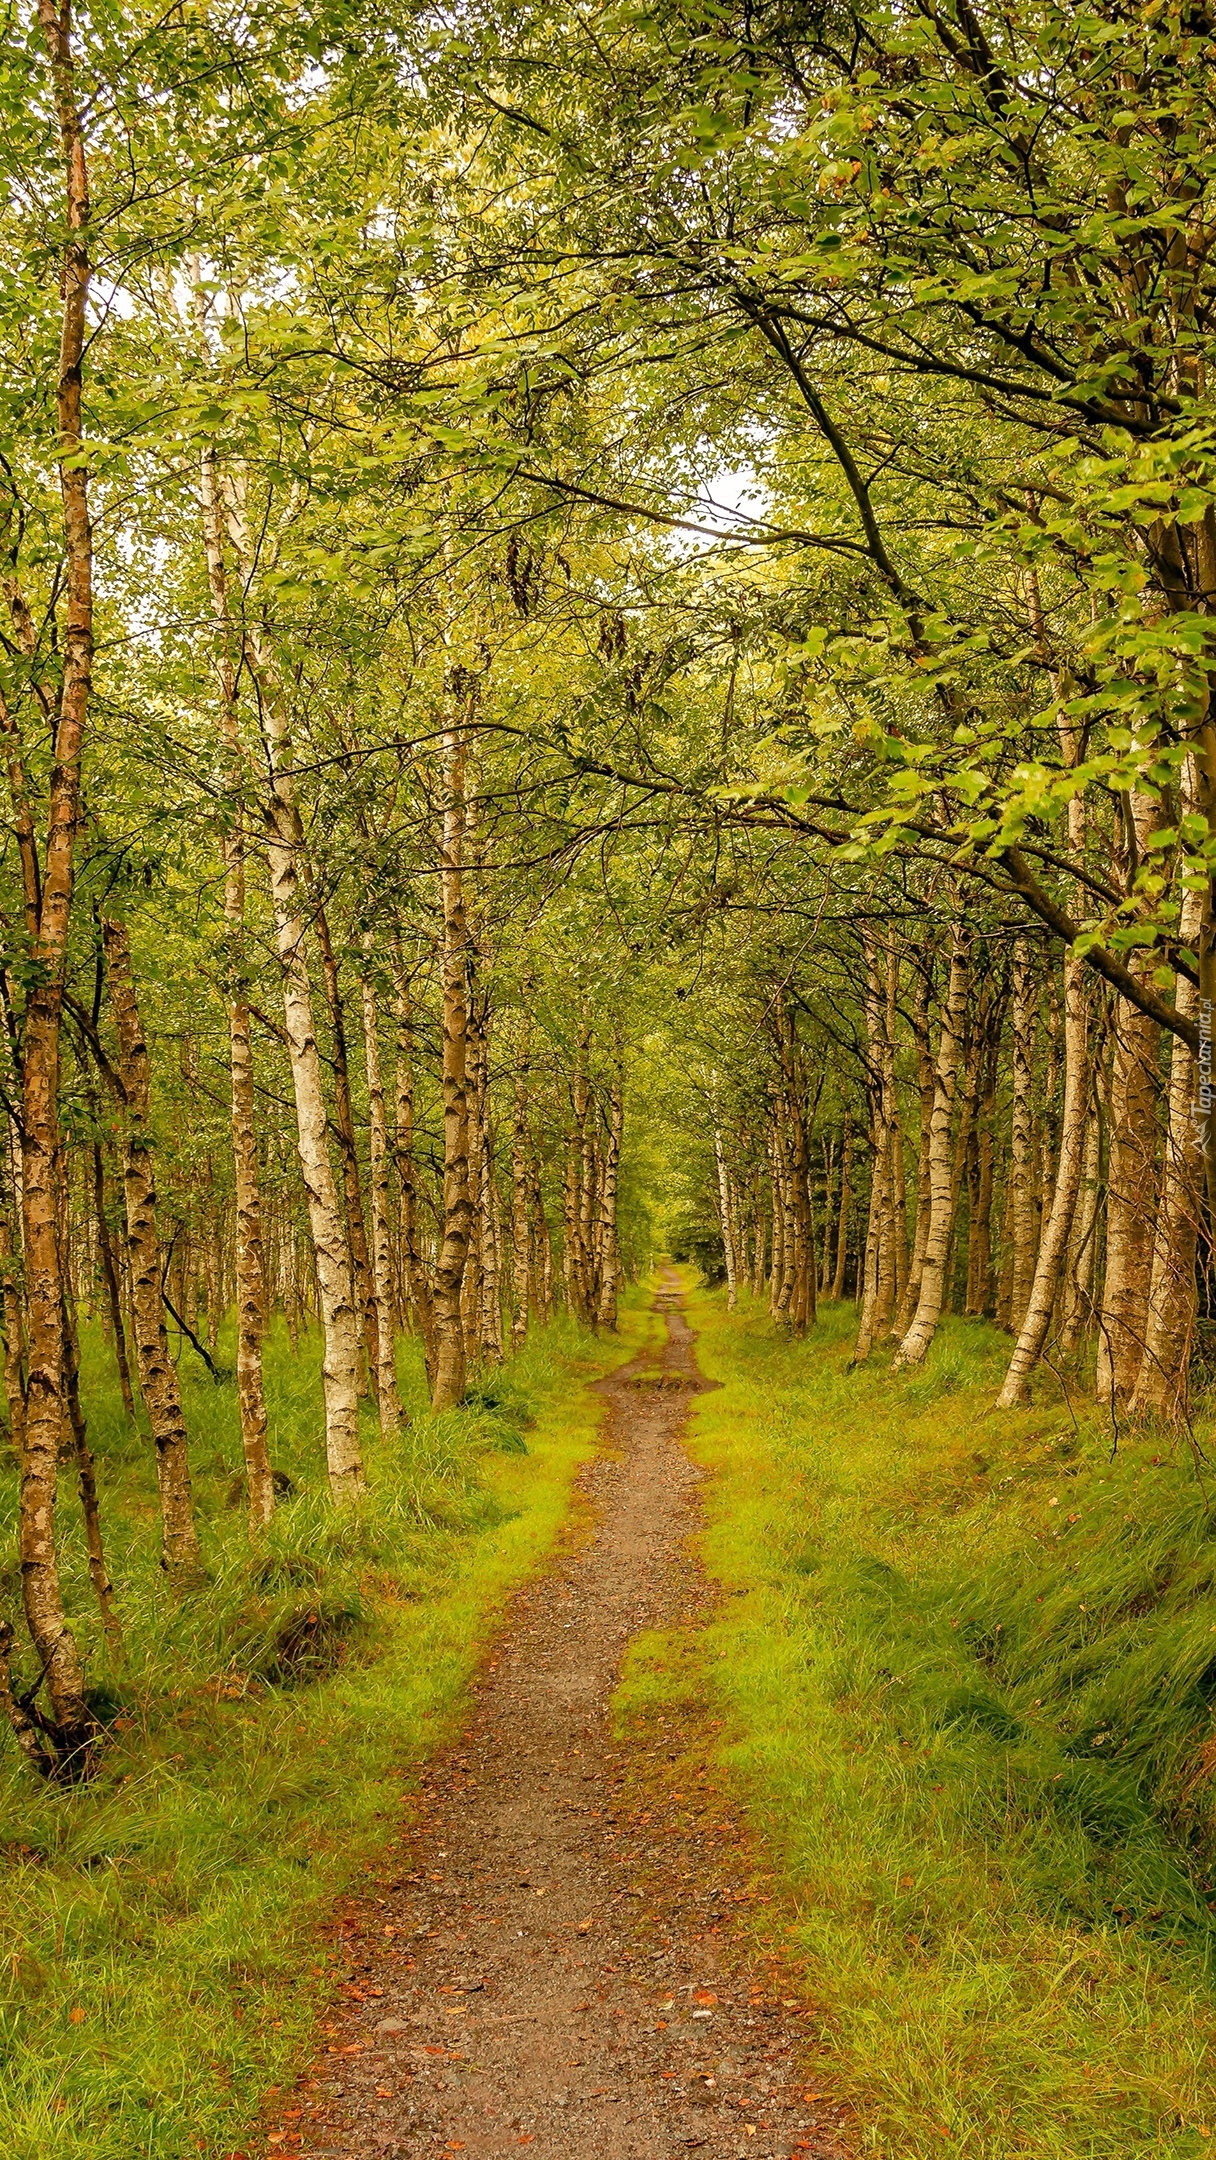 Ścieżka w brzozowym lesie